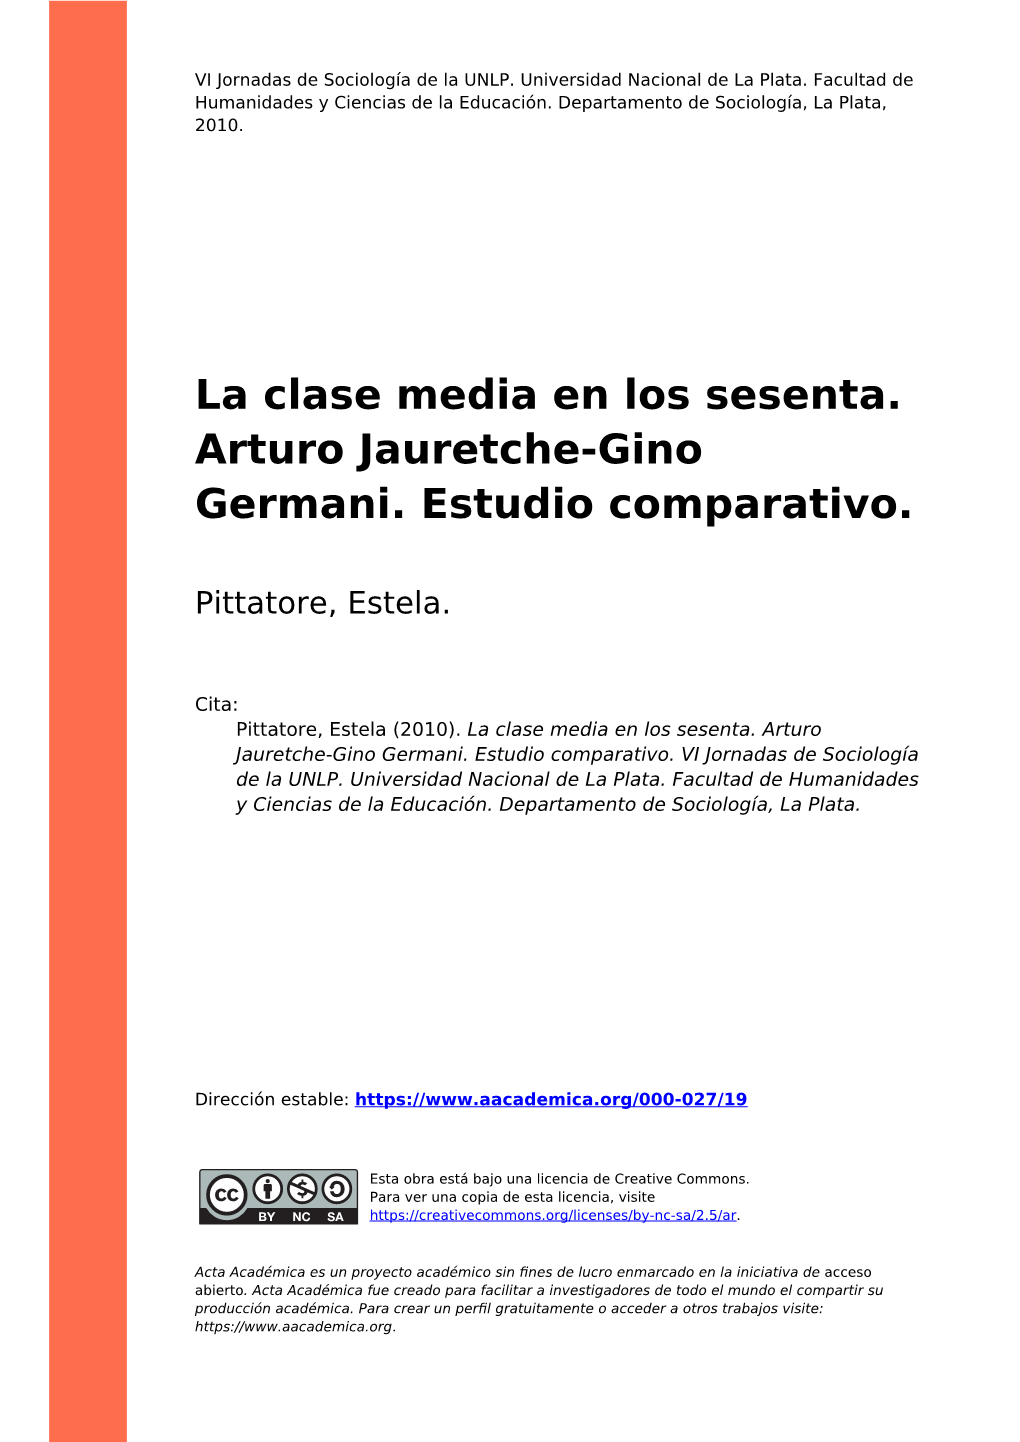 La Clase Media En Los Sesenta. Arturo Jauretche-Gino Germani. Estudio Comparativo